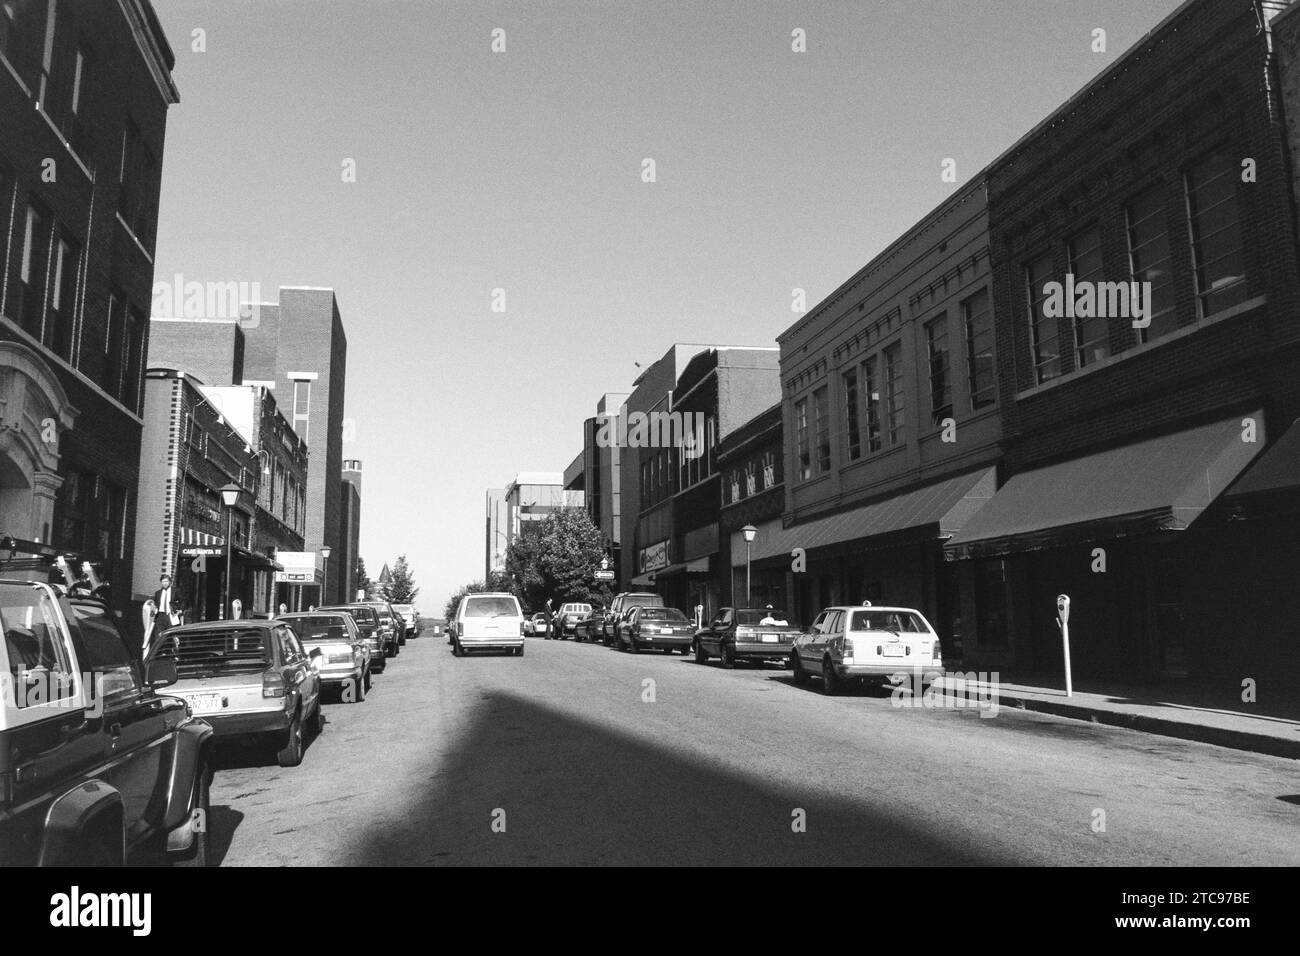 Fayetteville, Arkansas, USA - 21 août 1992 : Archive éditorial vue en noir et blanc de East Center Street dans le quartier historique du centre-ville. Tourné sur film. Banque D'Images